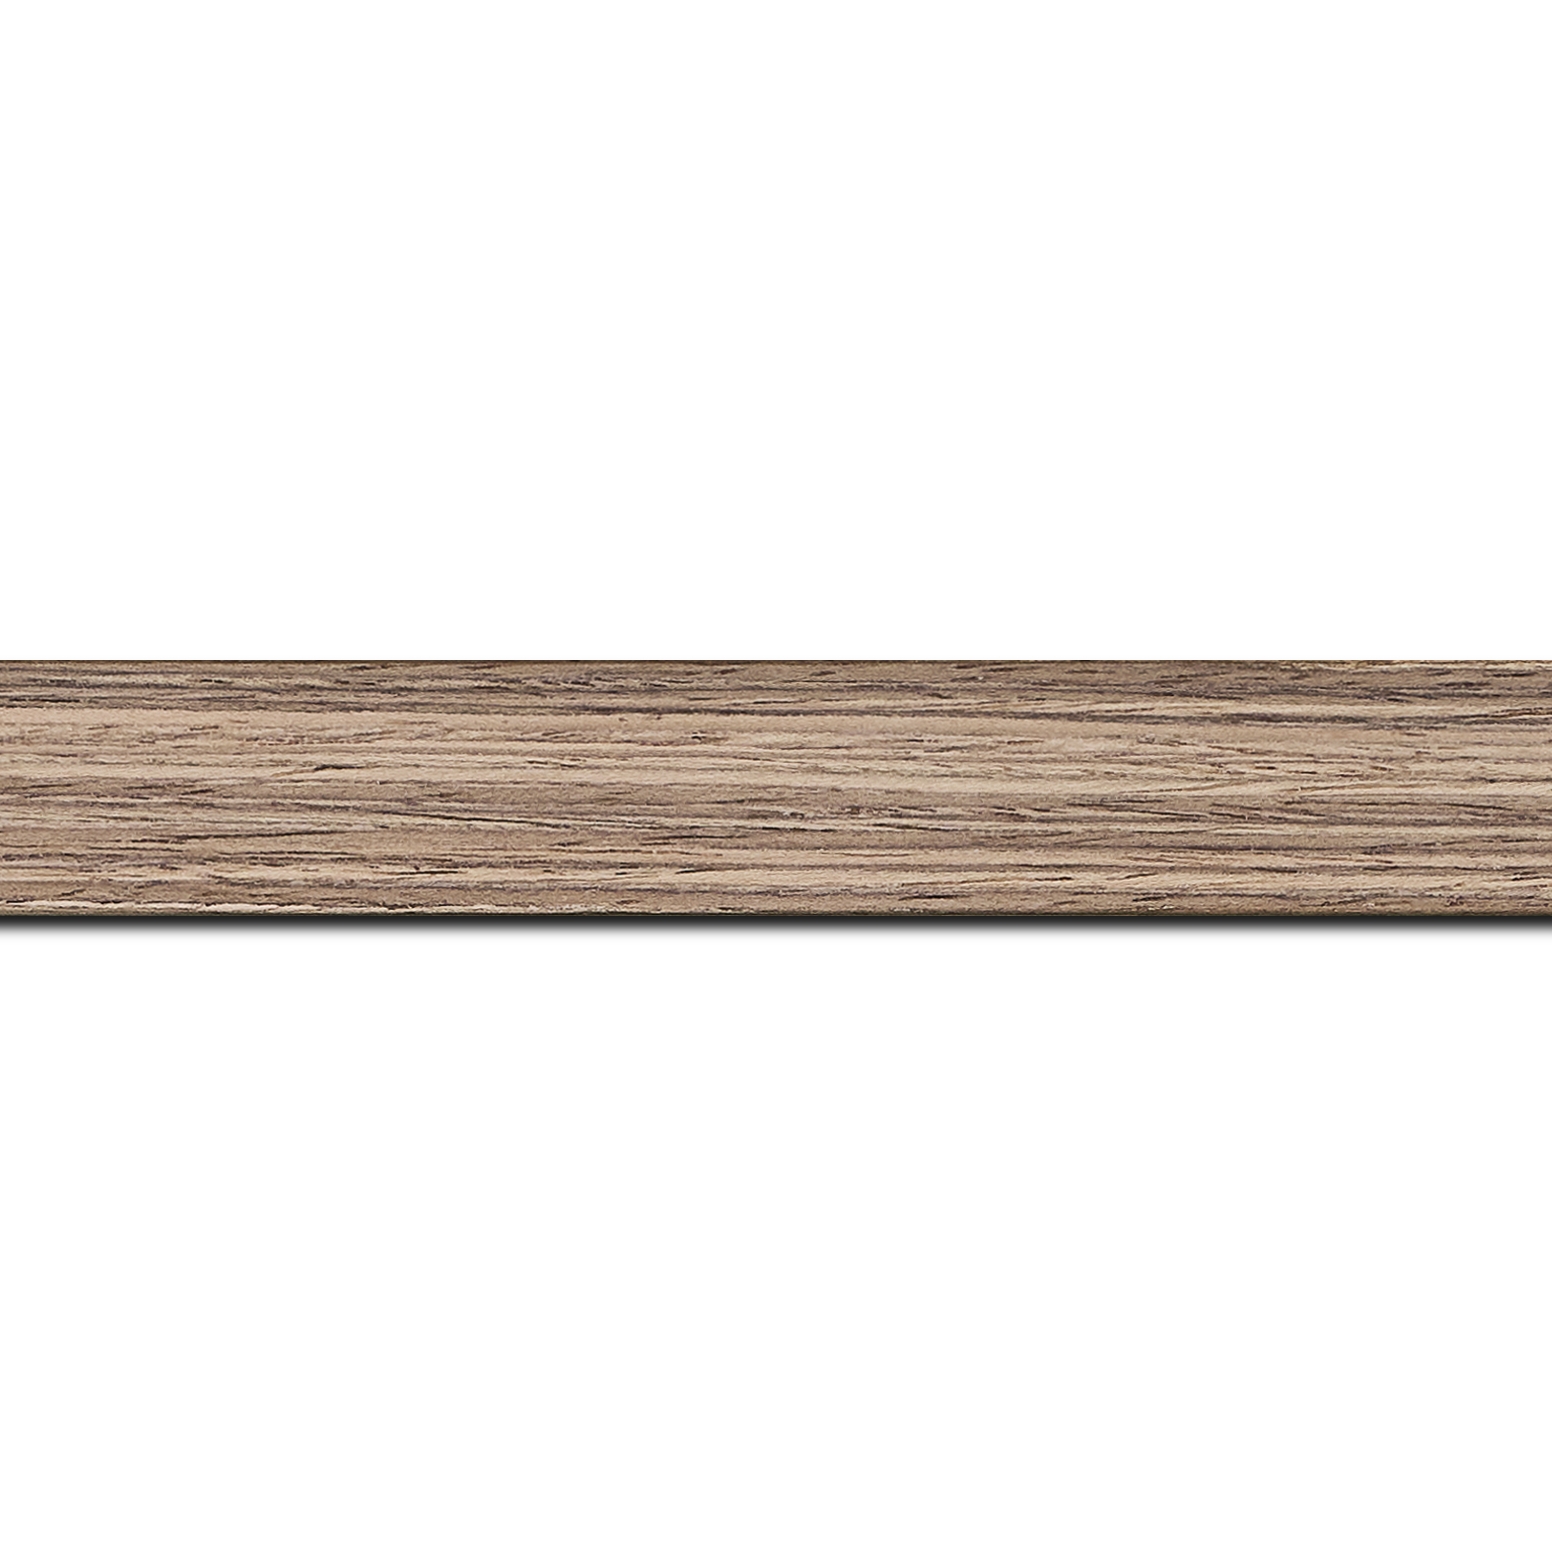 Pack par 12m, bois profil plat largeur 2.5cm plaquage noyer haut de gamme(longueur baguette pouvant varier entre 2.40m et 3m selon arrivage des bois)